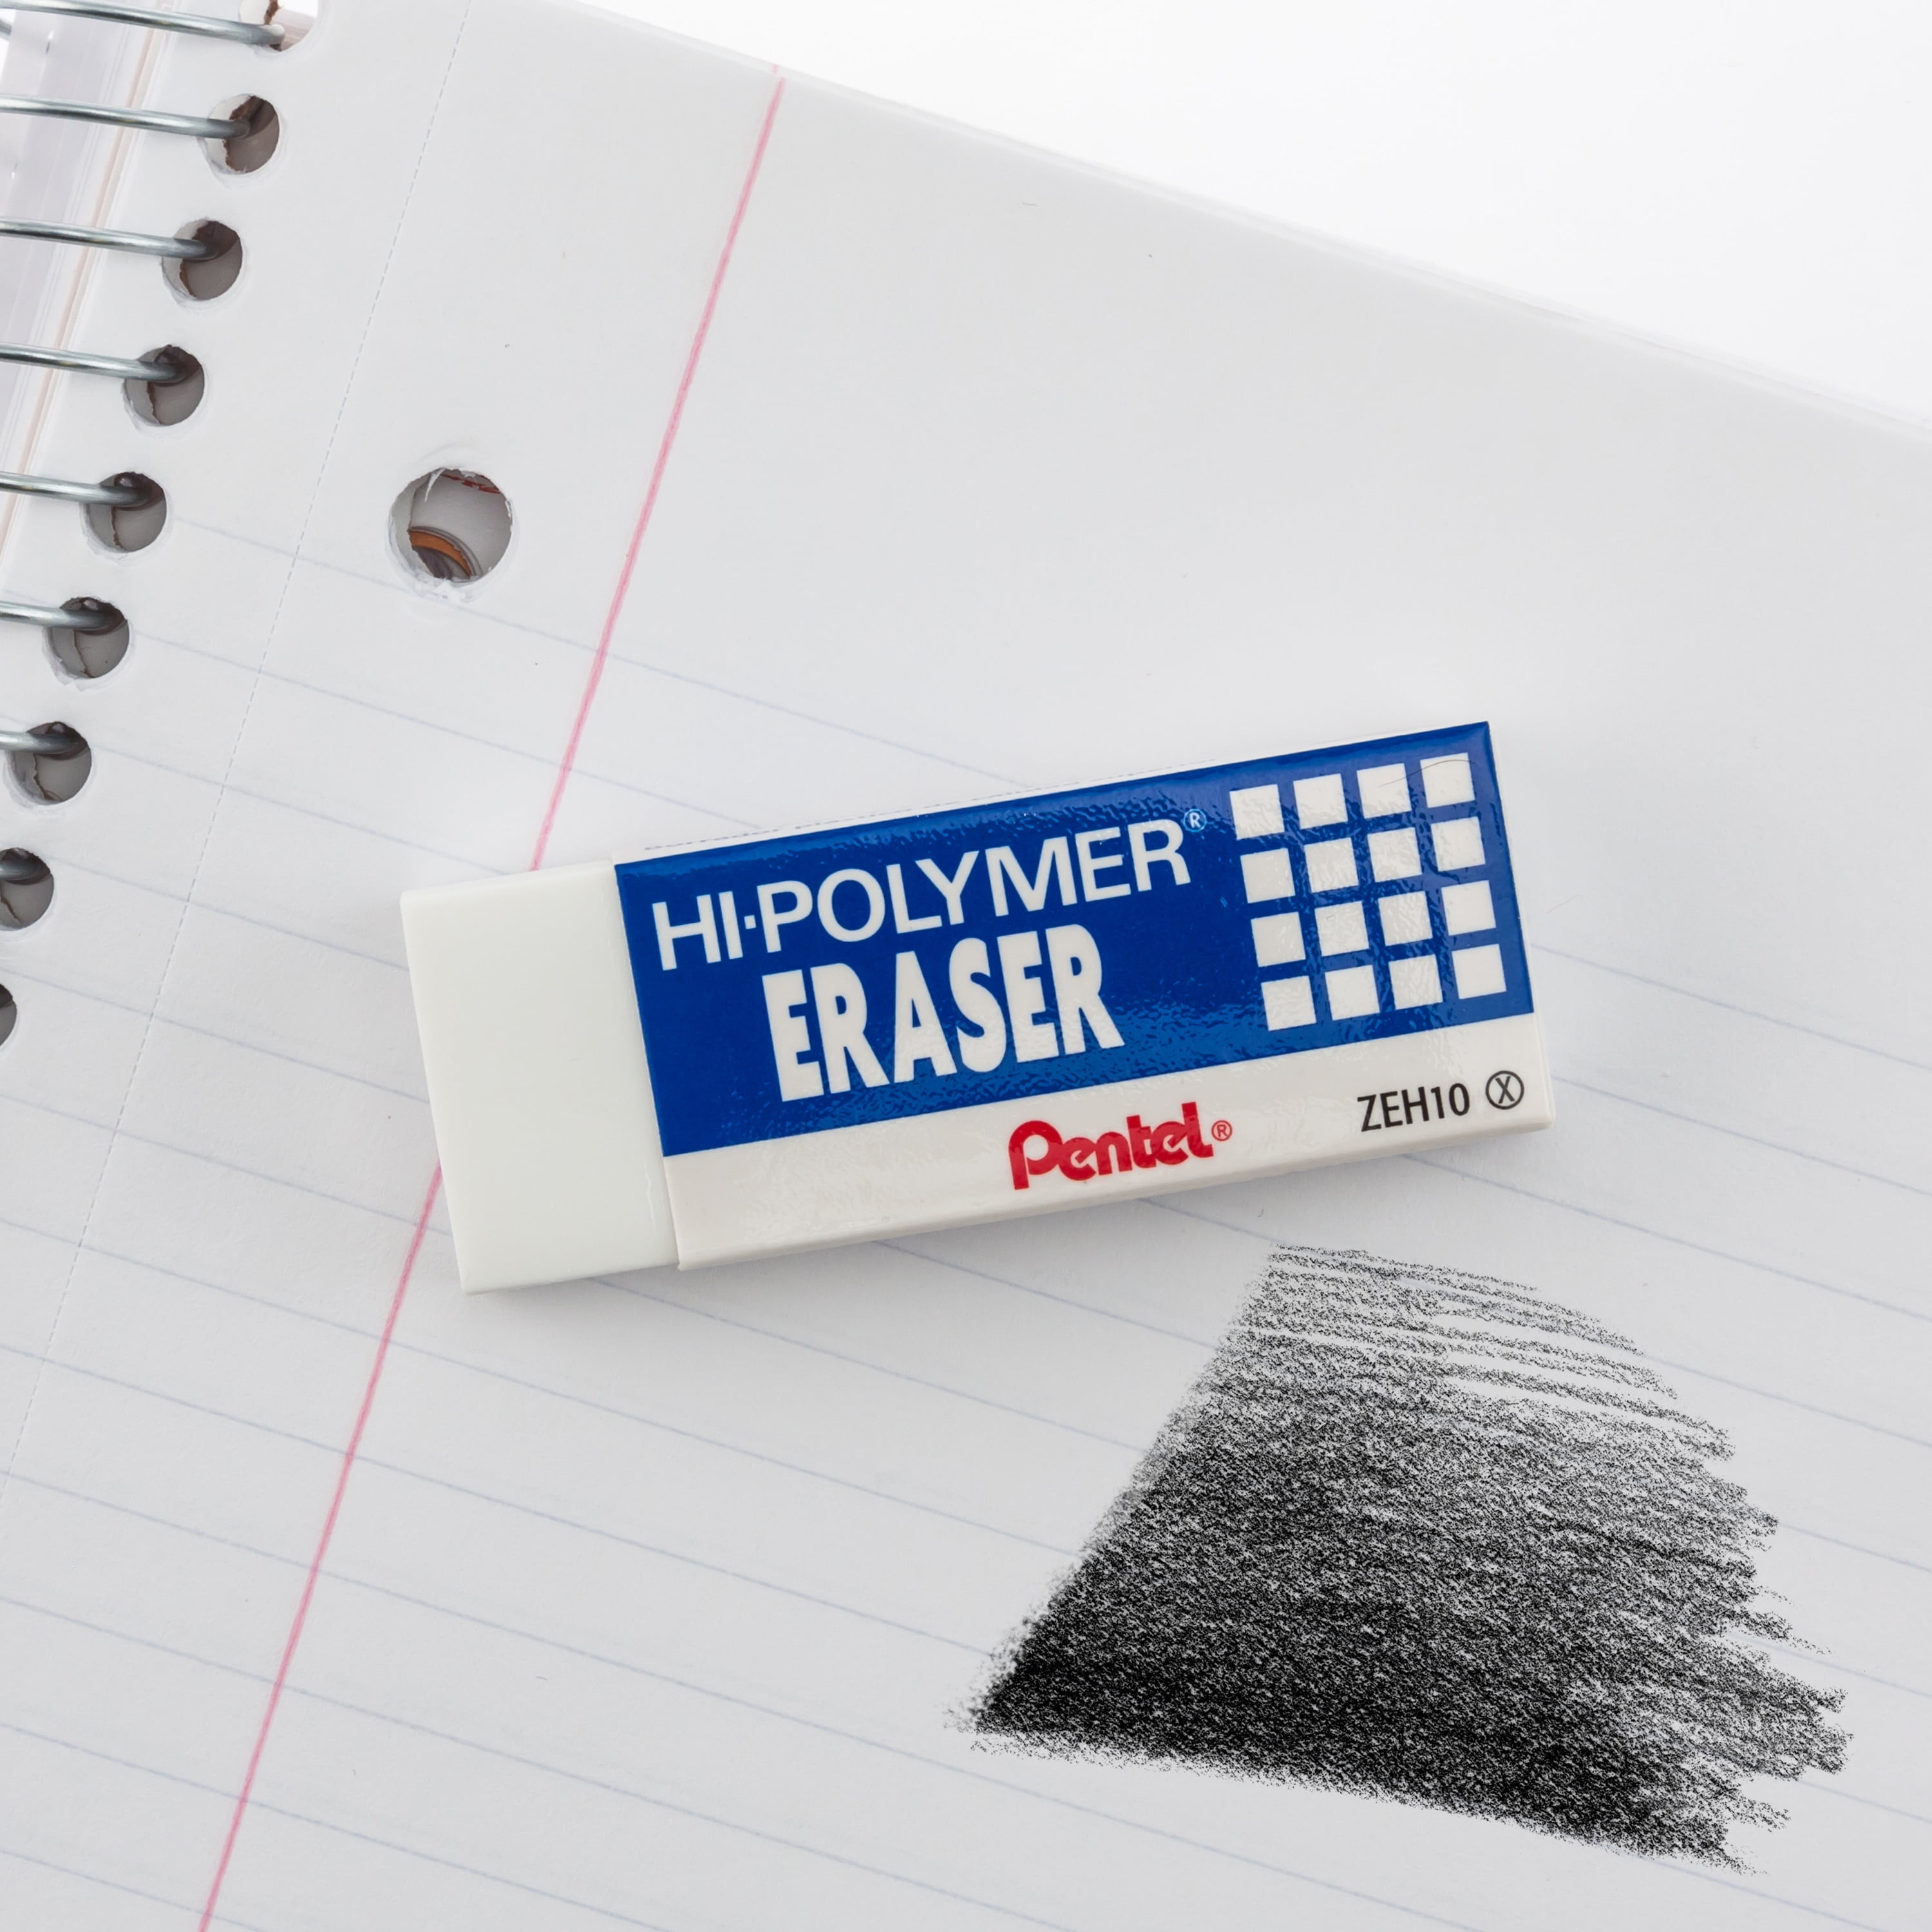 Pentel Hi-polymer Cap Eraser, White, Pack Of 240 : Target